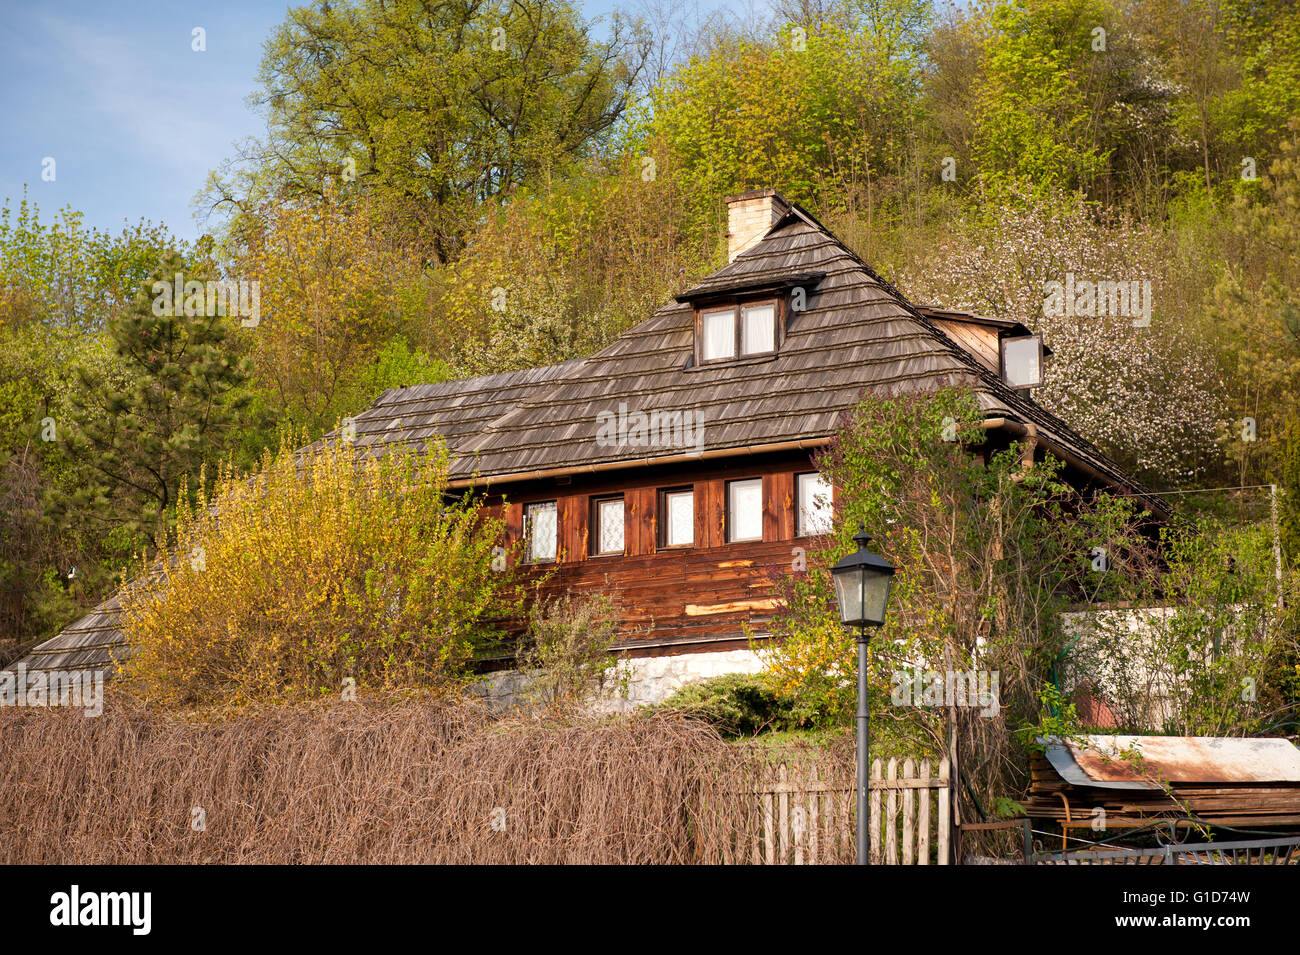 Holzhaus Holz geflieste Dach in Kazimierz Dolny, Polen, Europa, Krzywe Kolo Street, Privateigentum zu Hause Gebäudehülle. Stockfoto